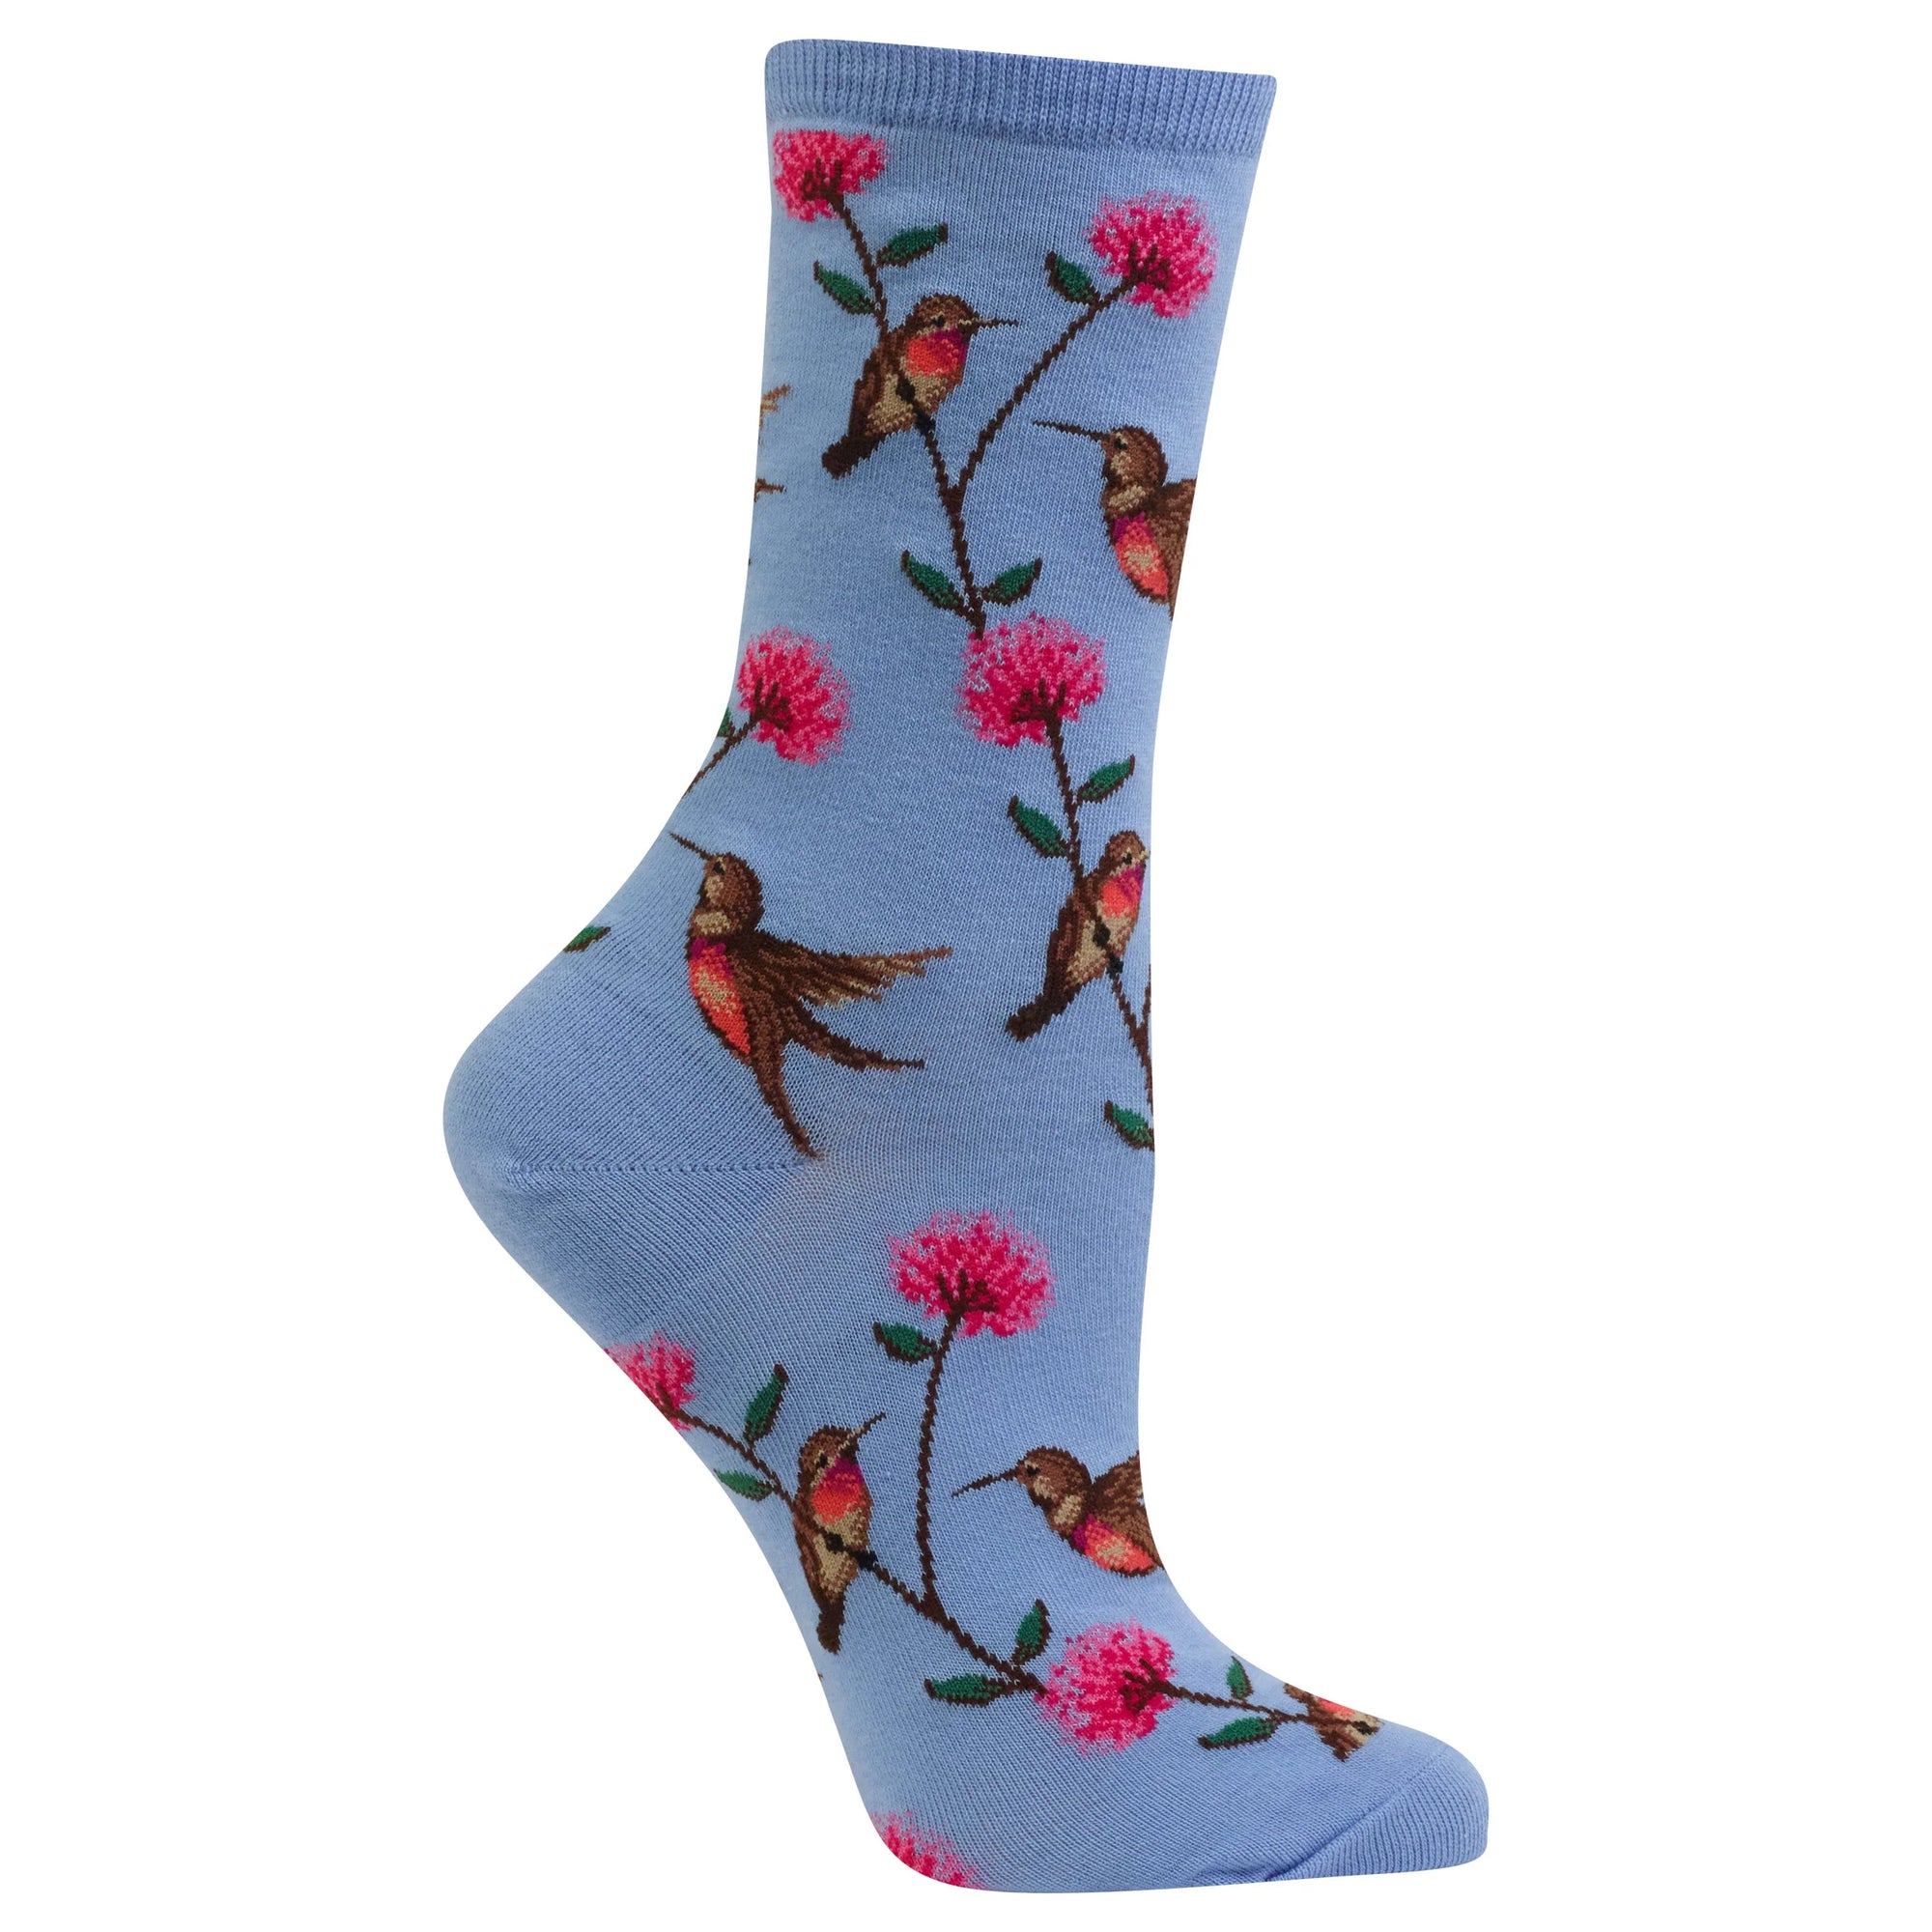 Hot Sox Women’s Hummingbird Crew Socks